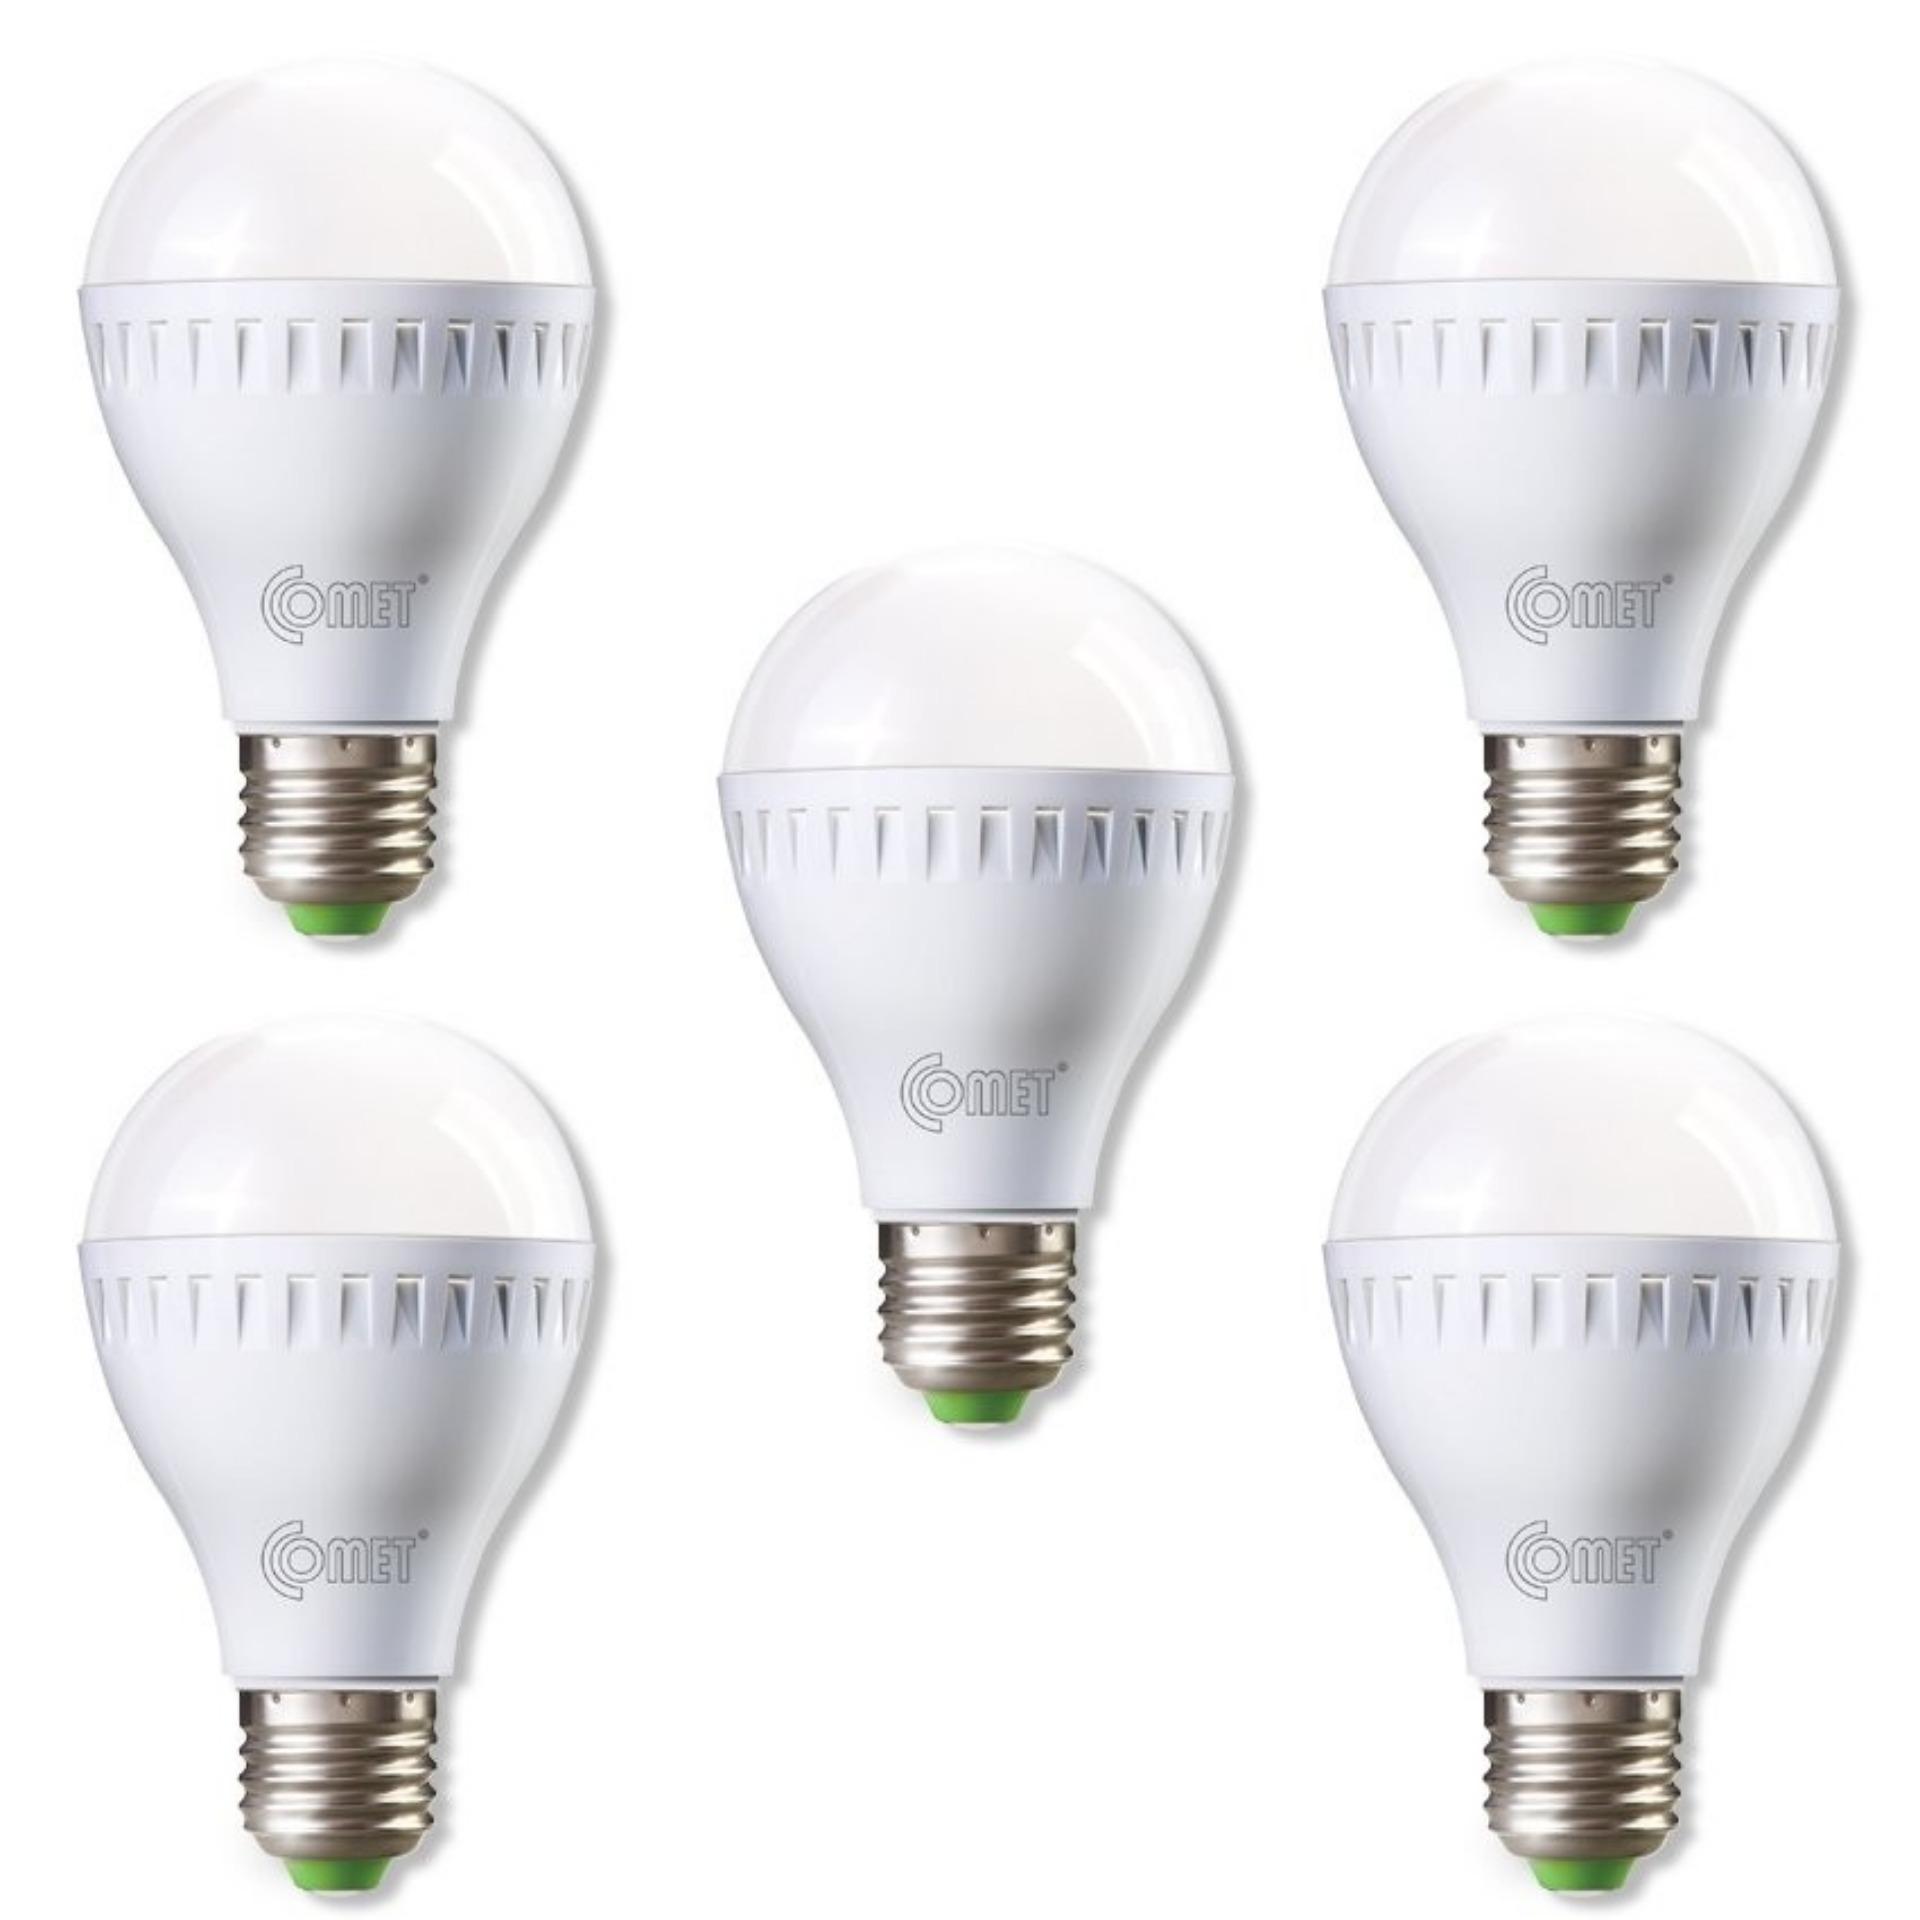 Bộ 5 bóng đèn LED Bulb COMET công suất 3 Watt CB11-3D Ánh sáng trắng